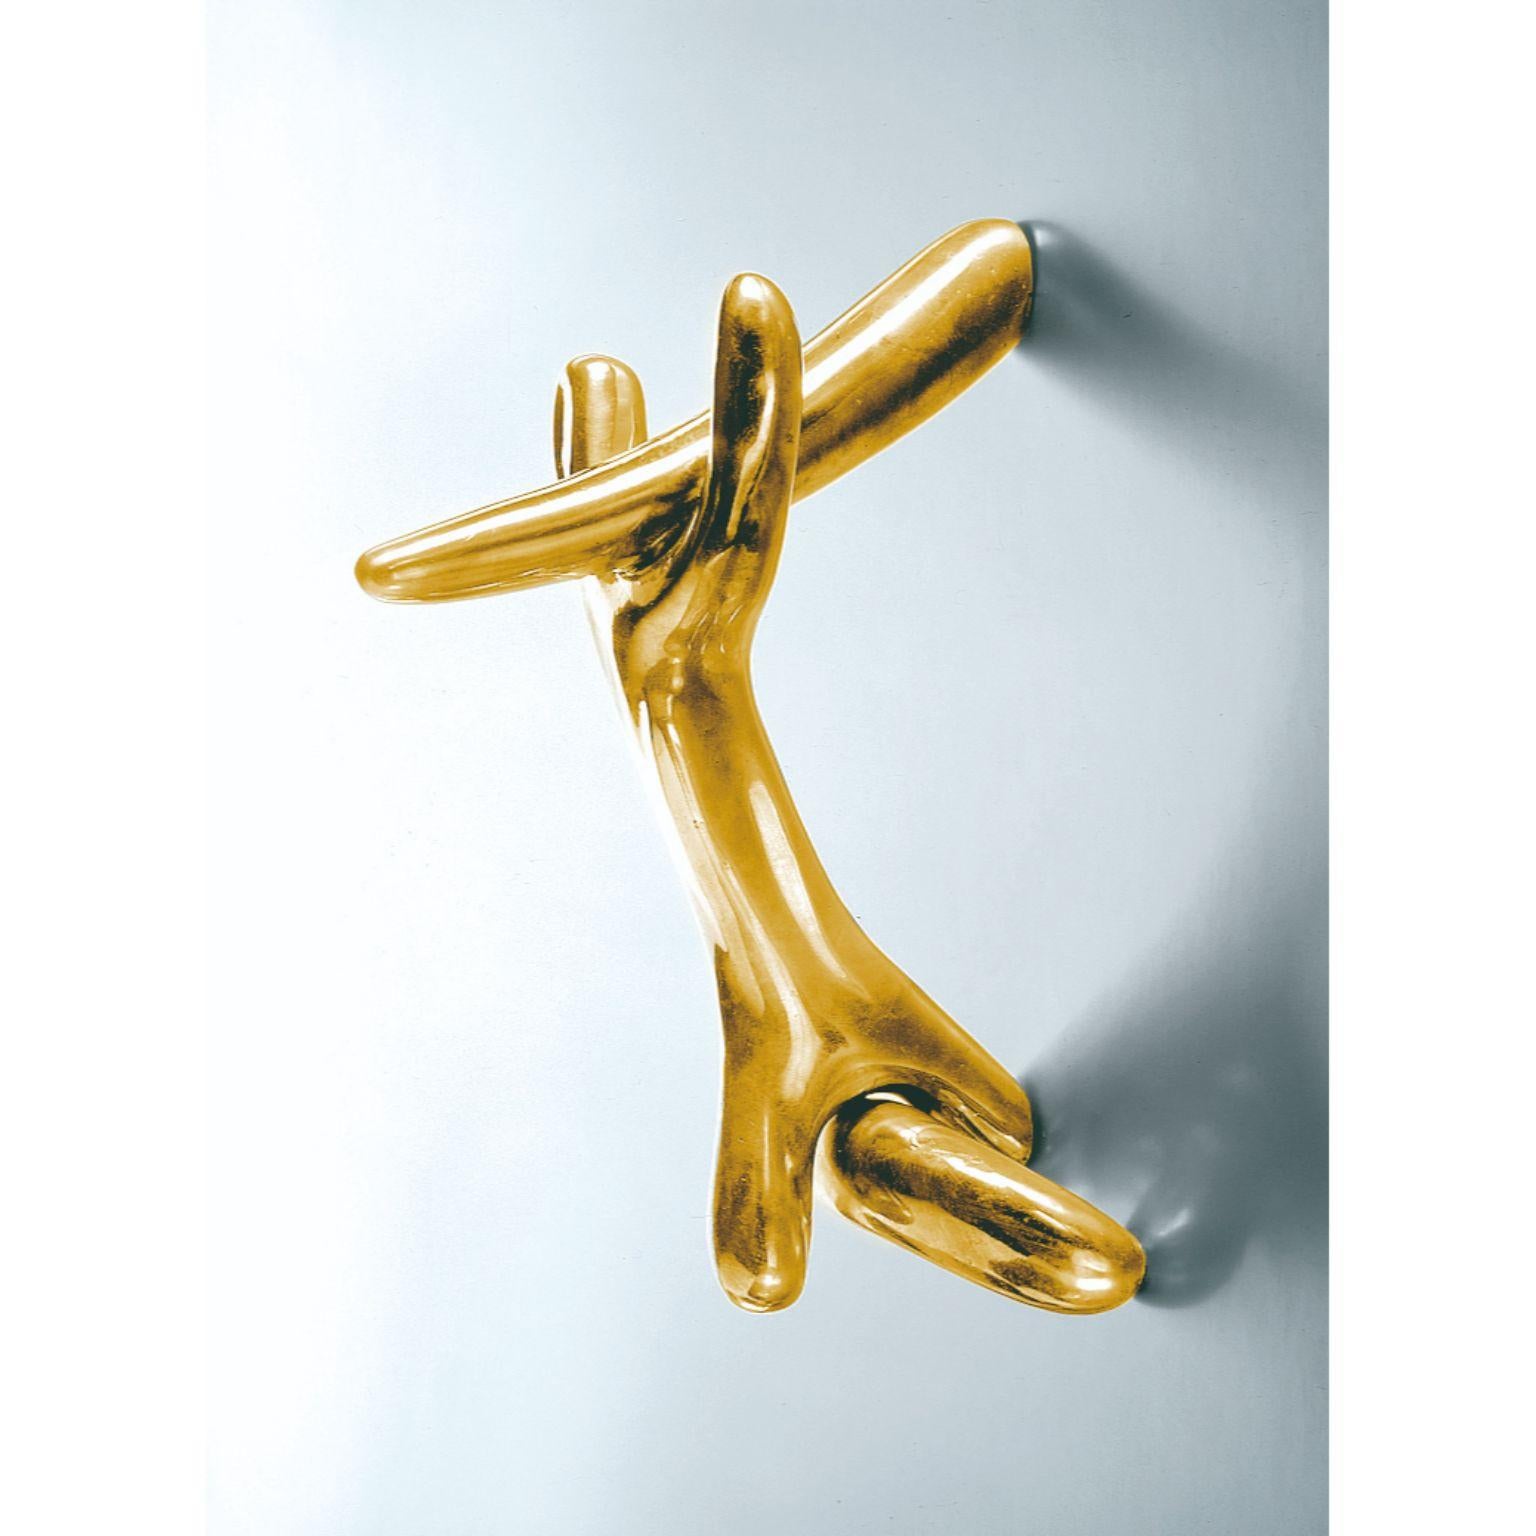 Rinocerontico-Knauf von Salvador Dalí 
1937
Abmessungen: 13 x 19 x 24 h cm
MATERIALIEN: Bronzeguss

Drei massive Teile, die durch Wachsausschmelzverfahren in Bronze und
zu einem einzigen Körper zusammengefügt. Die Oberfläche der Teile ist